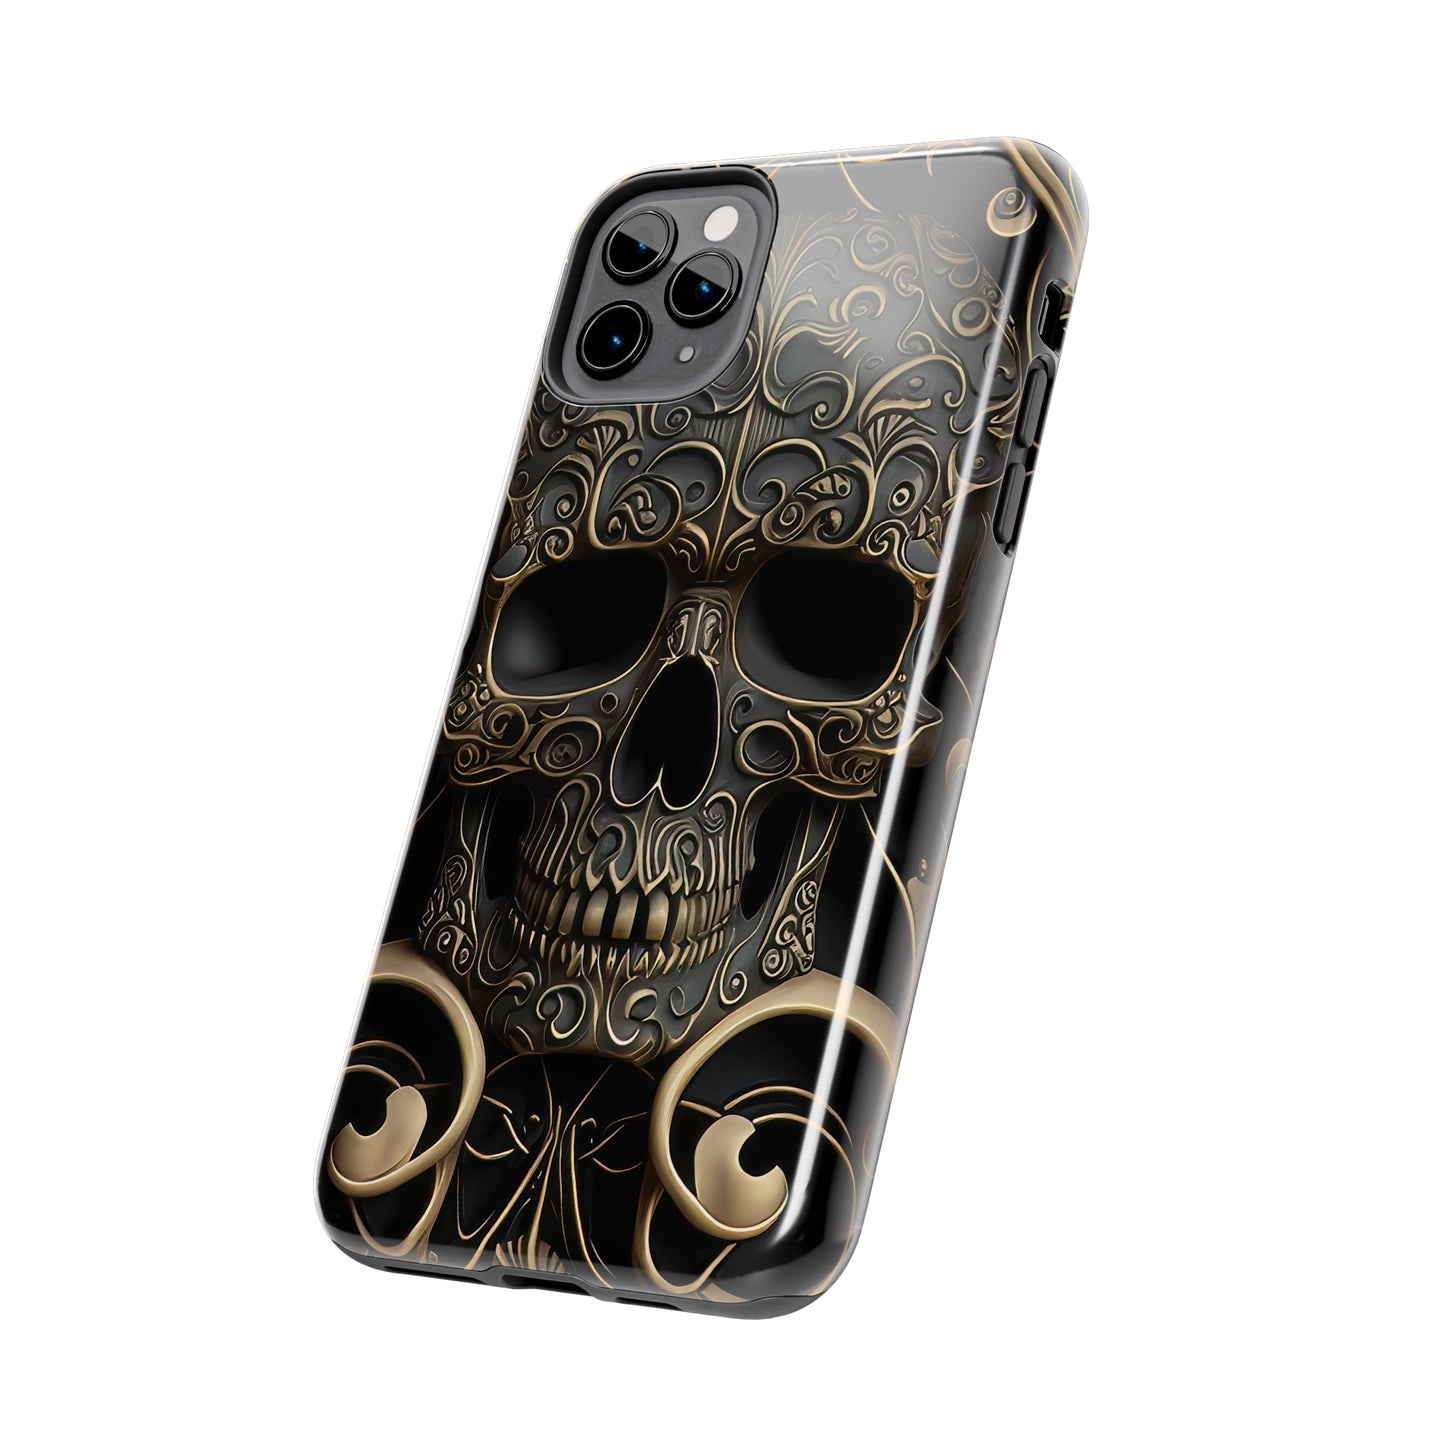 Metallic Chrome Skulls and classic Designed 2 Tough Phone Cases